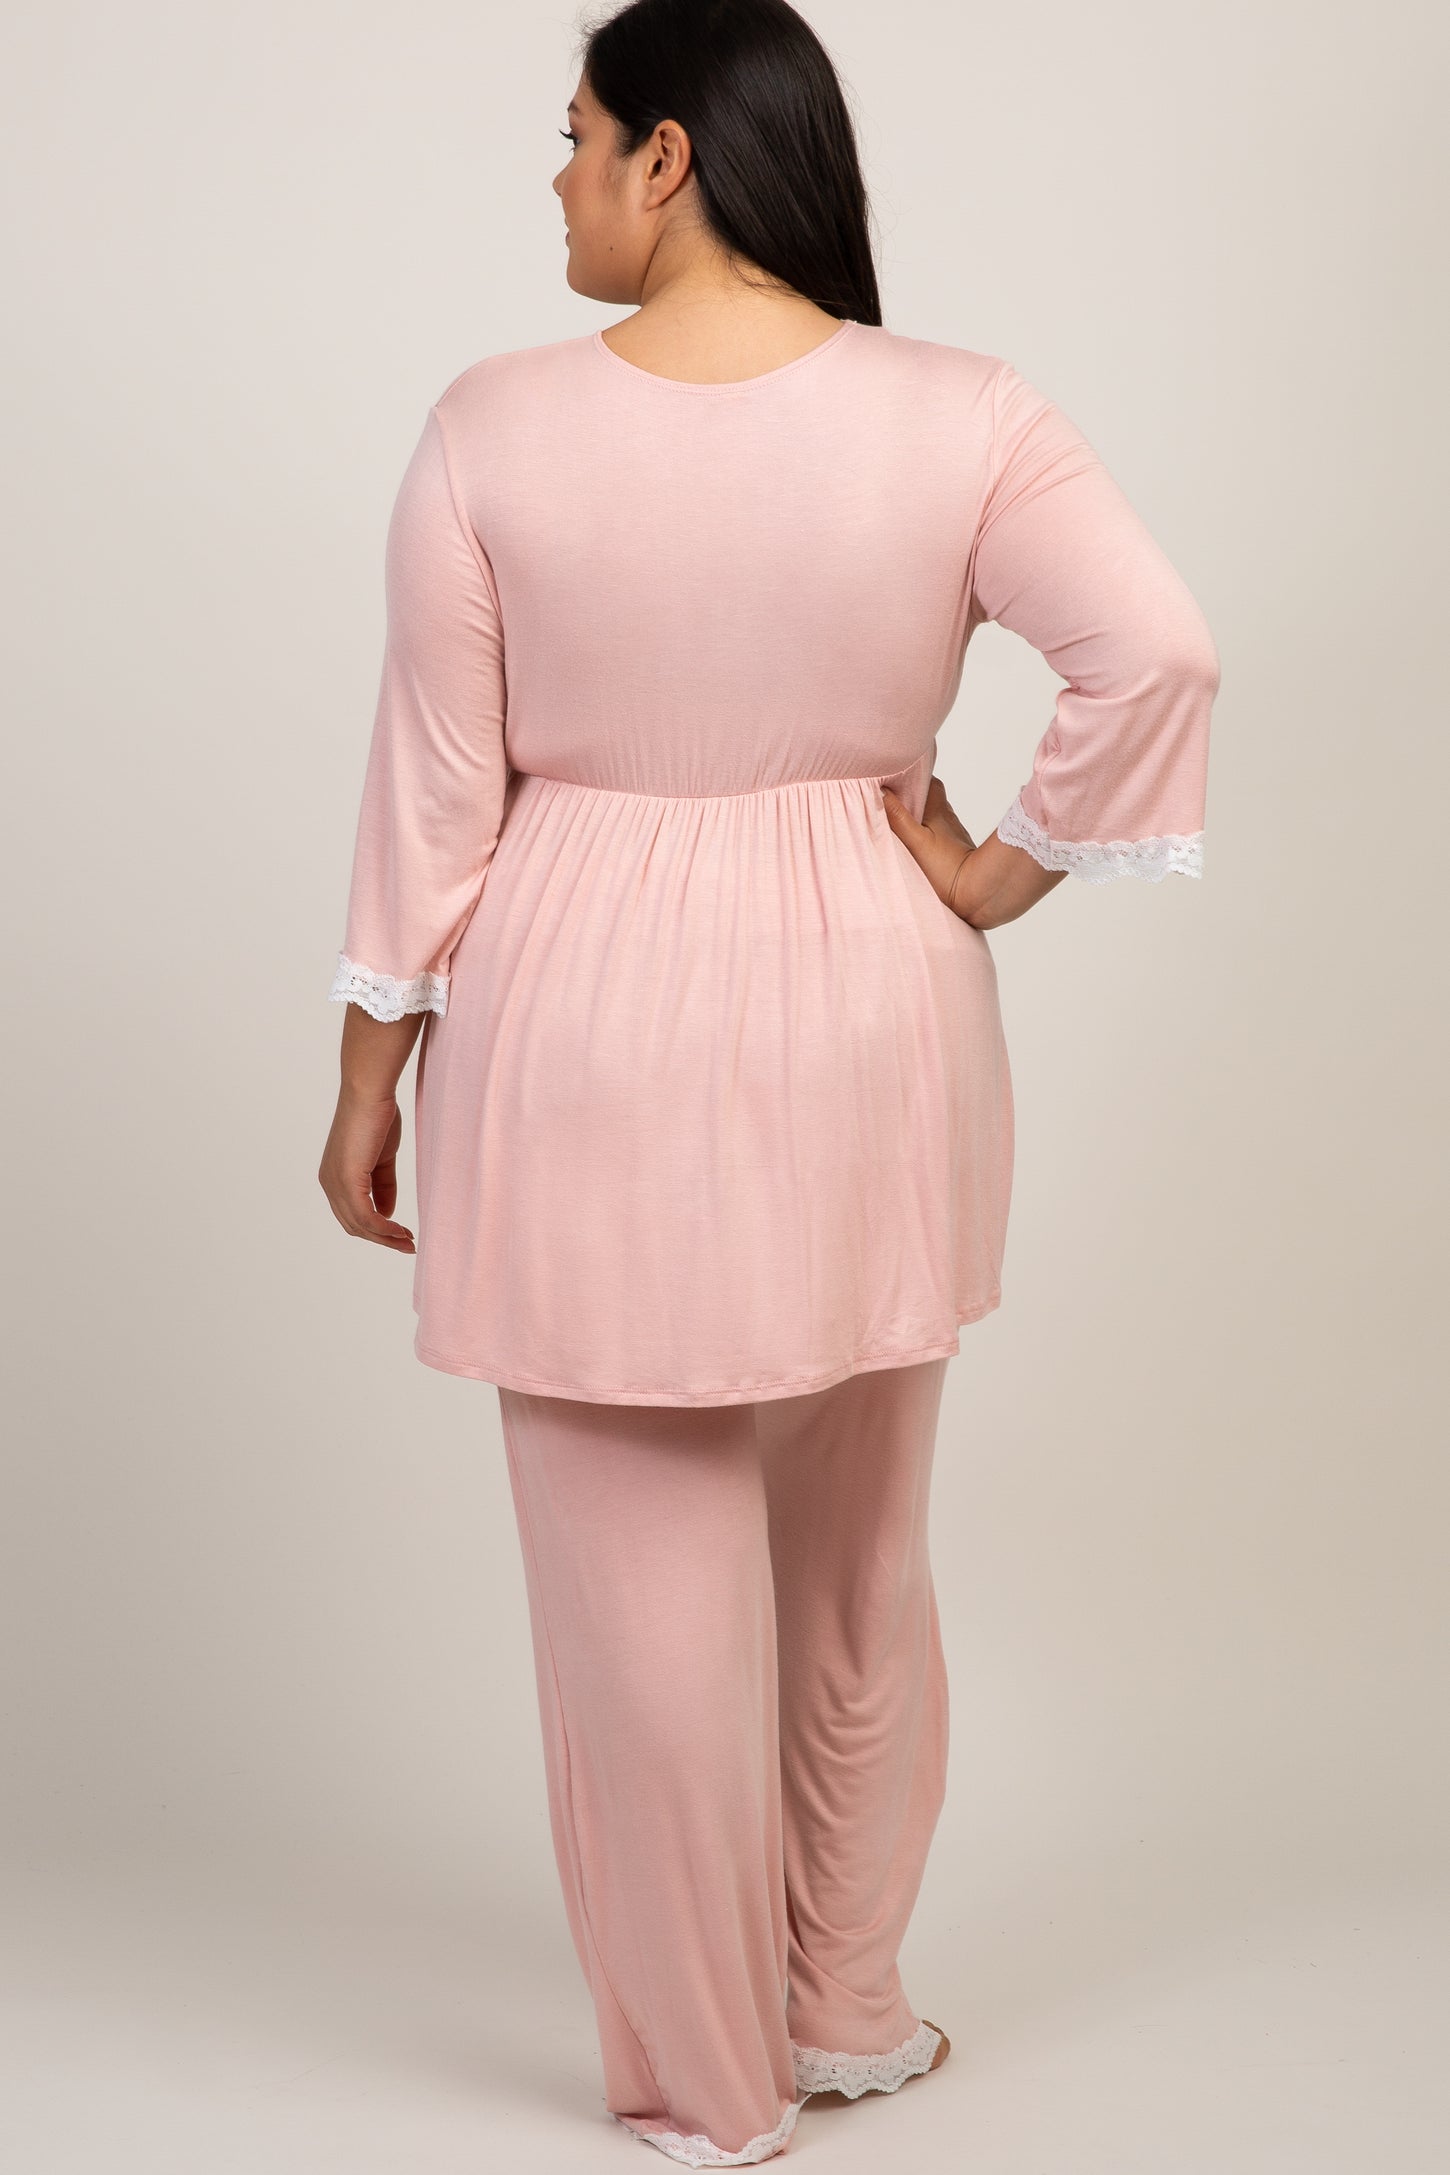 PinkBlush Pink Lace Trim Plus Maternity Pajama Set